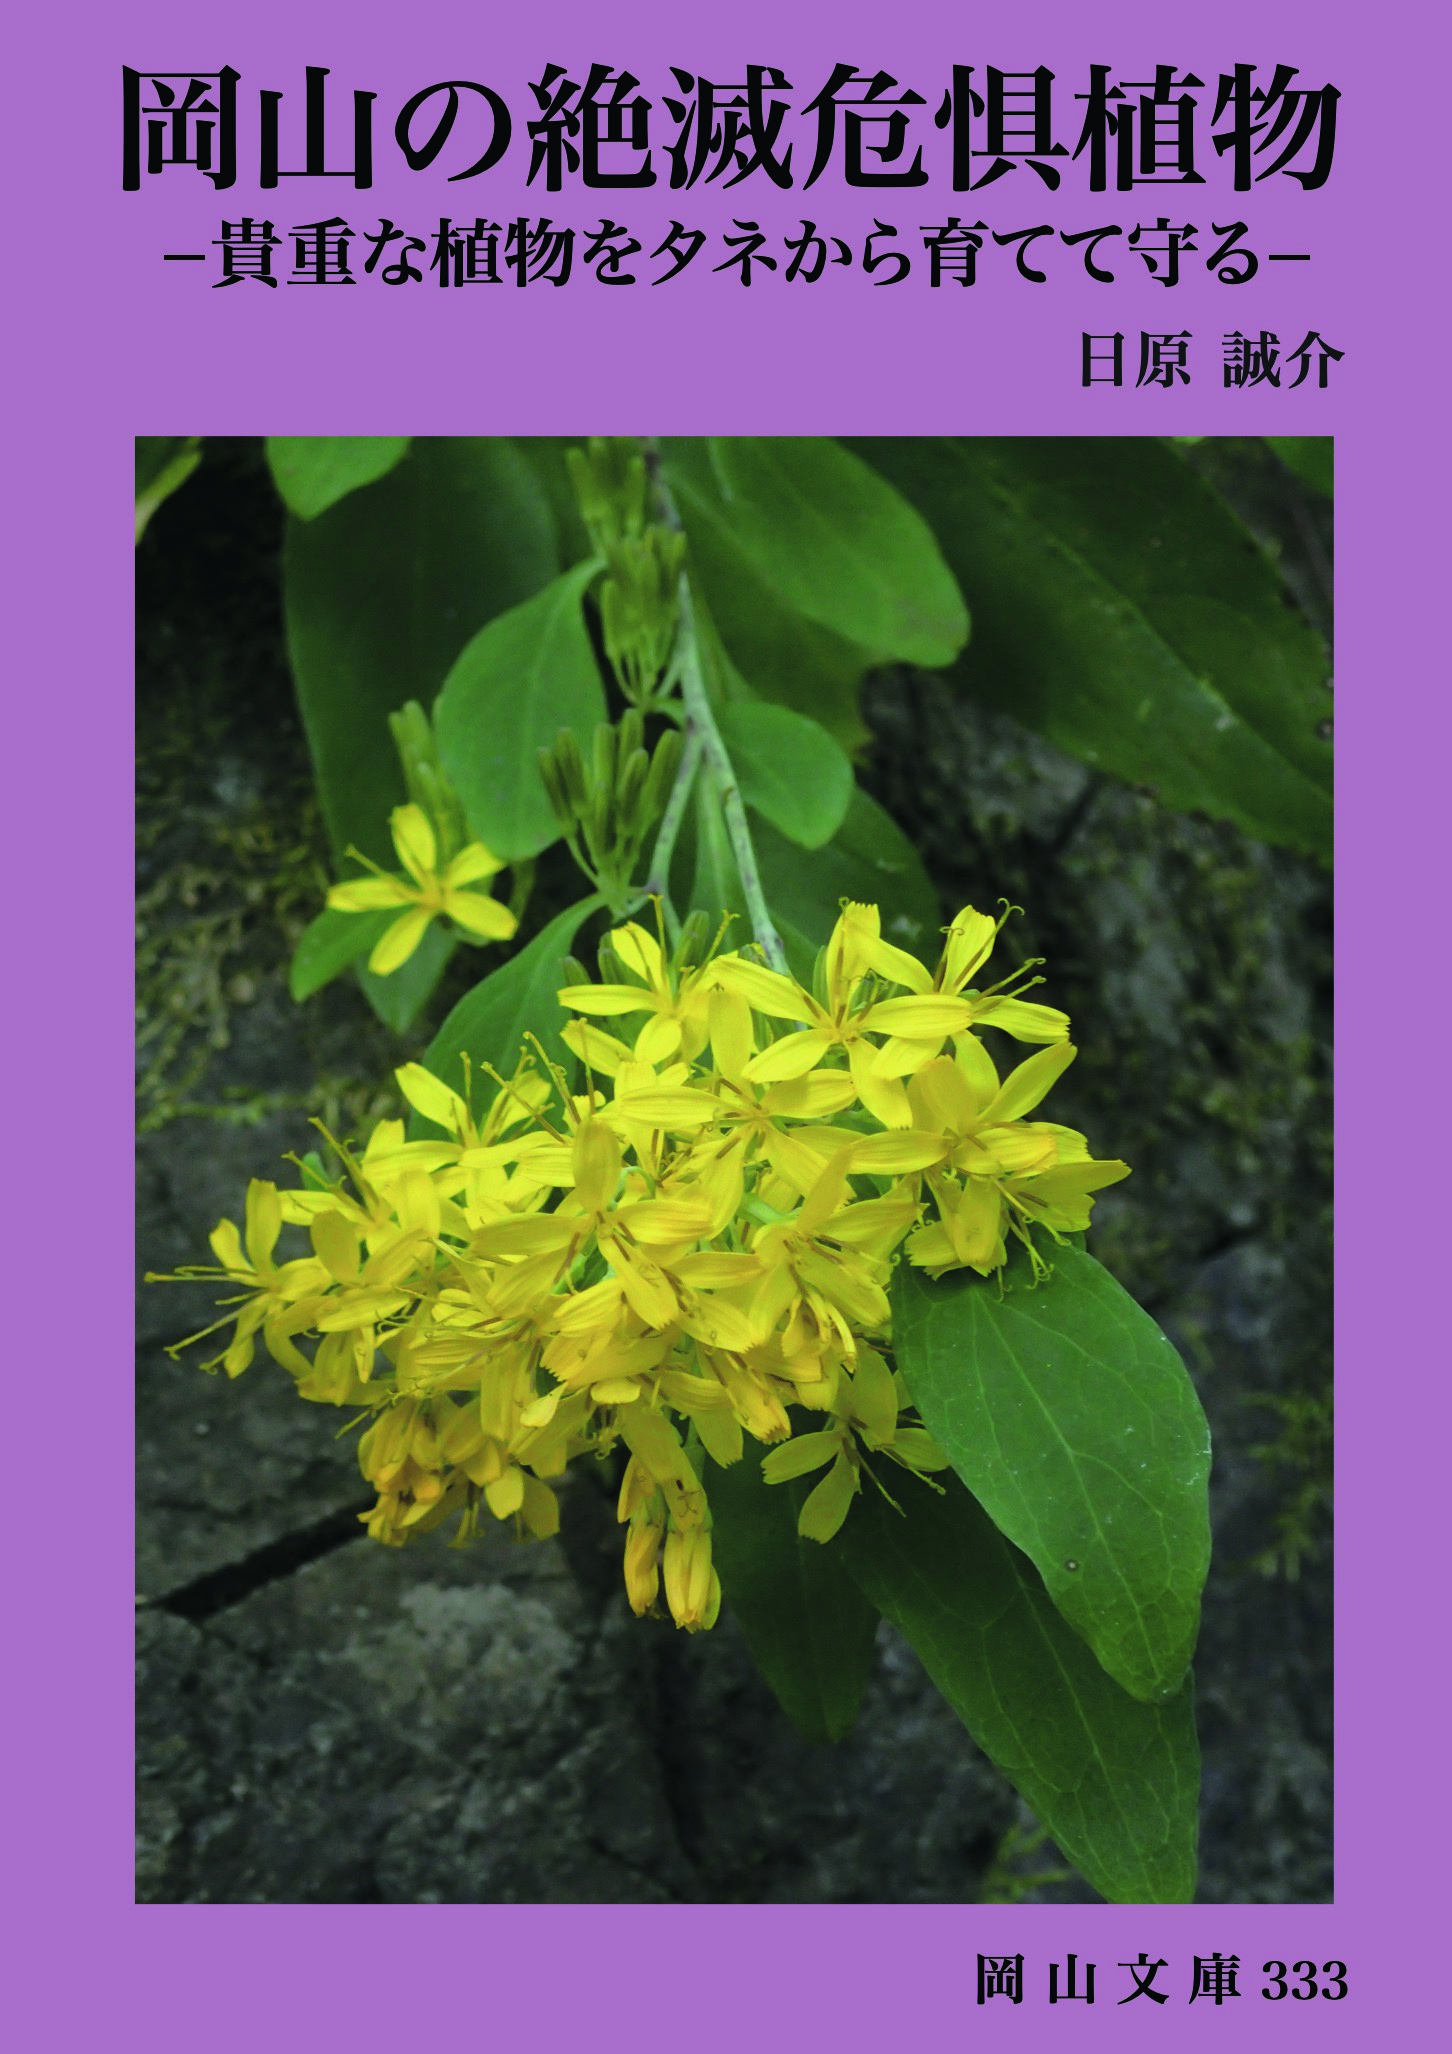 333.岡山の絶滅危惧植物〜貴重な植物をタネから育てて守る〜